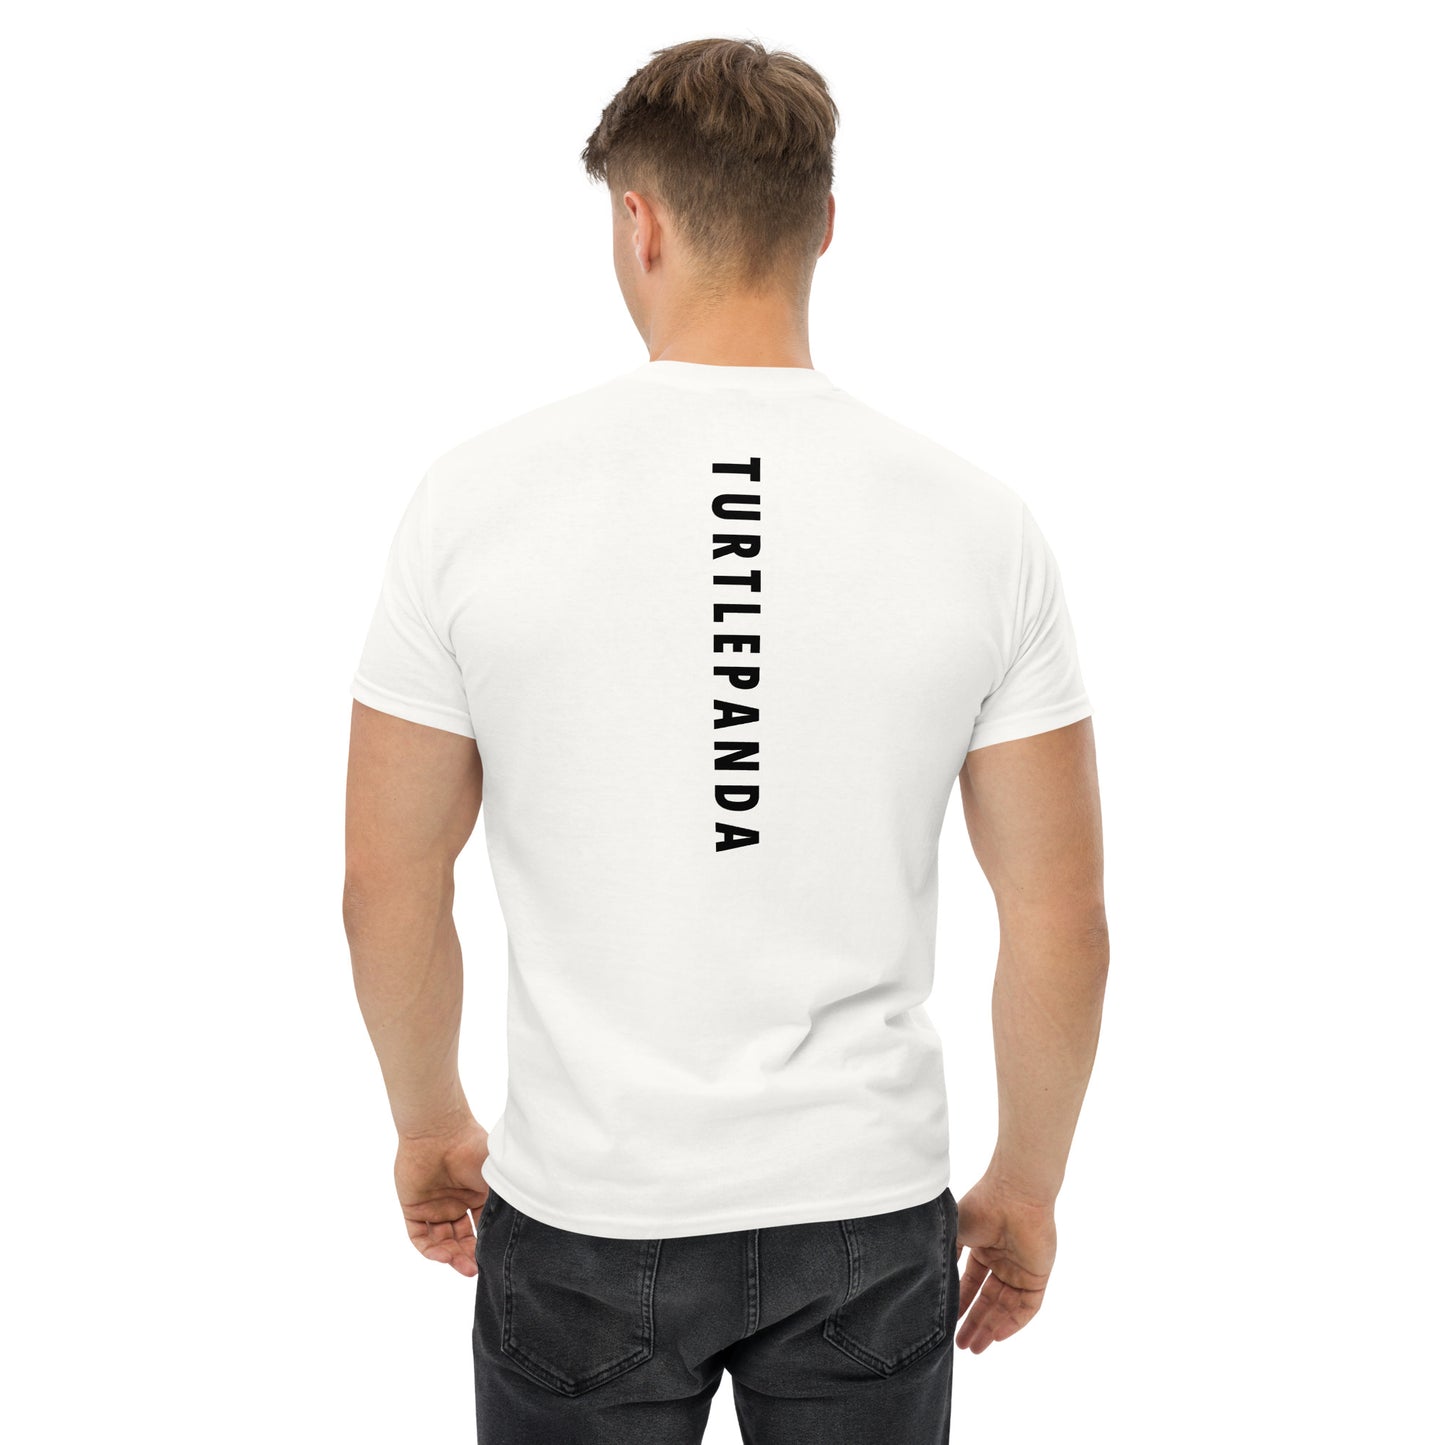 men tshirts - tshirts - shirts - brooklyn - newyork - tshirts - active - urban - shopping